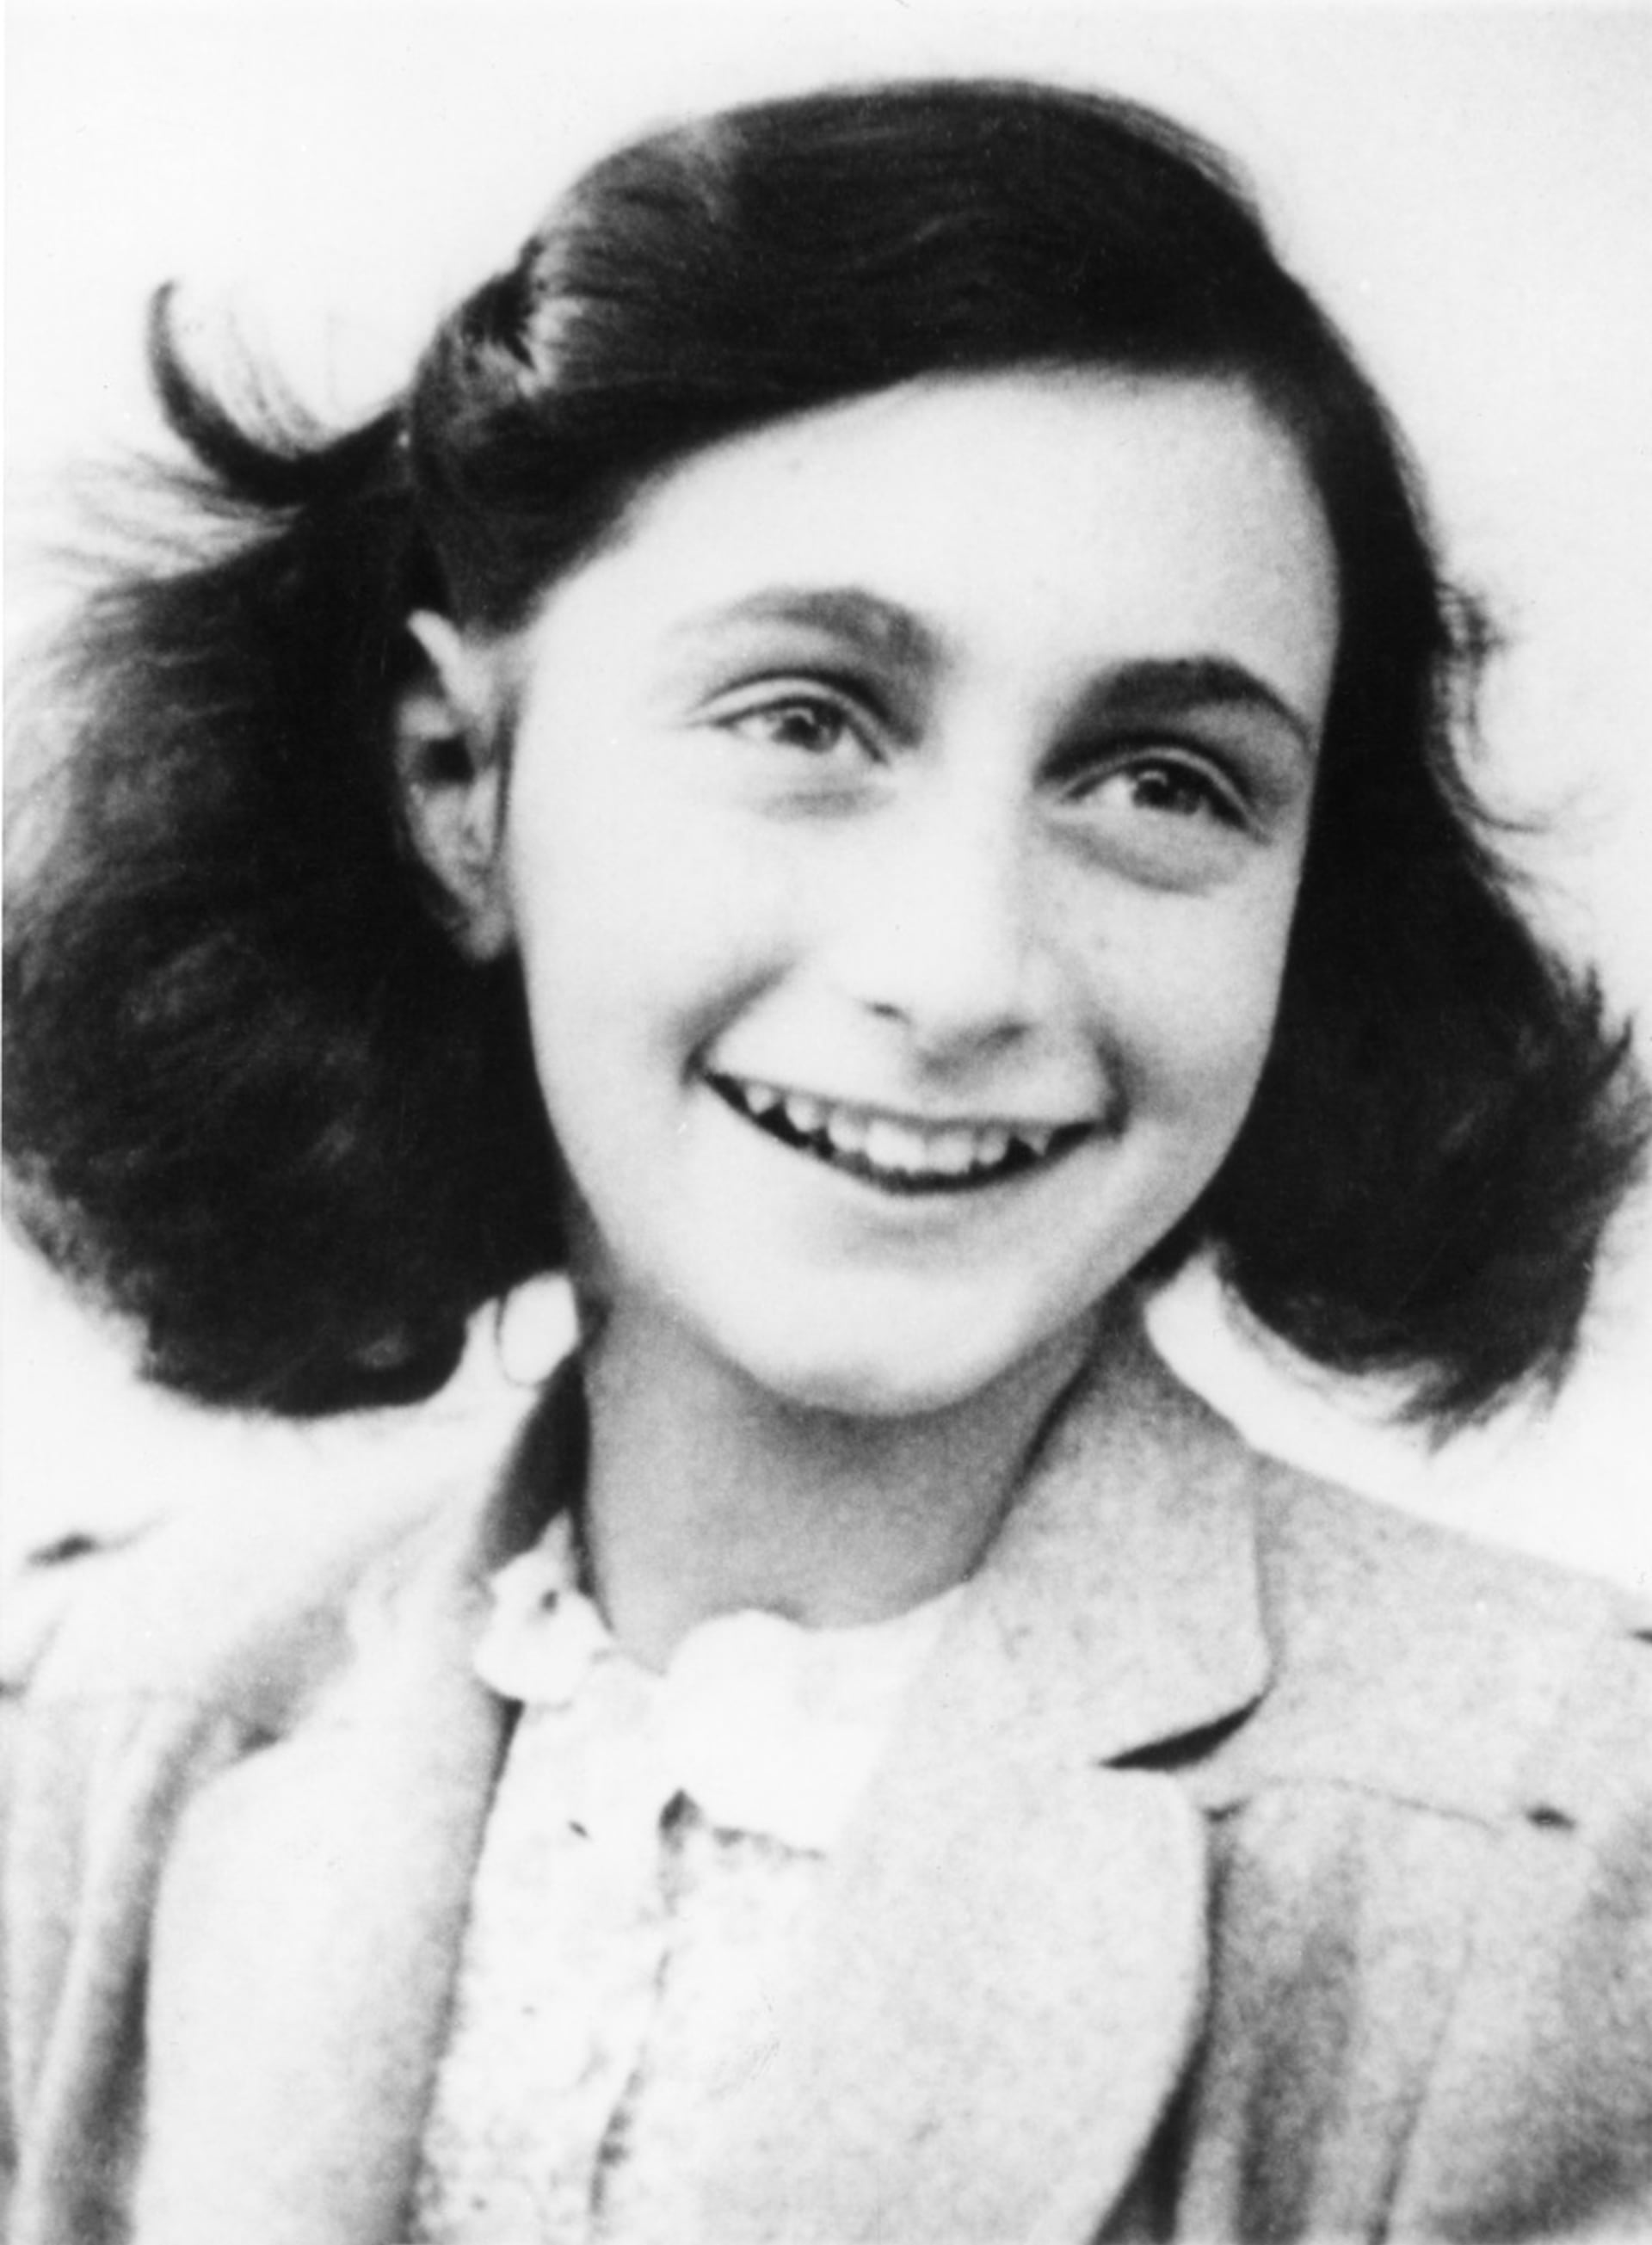 Anne Franková se dožila pouhých 15 let, přesto jsou její zápisky dodnes jedním z nejvýznamnějších děl popisujících holocaust.